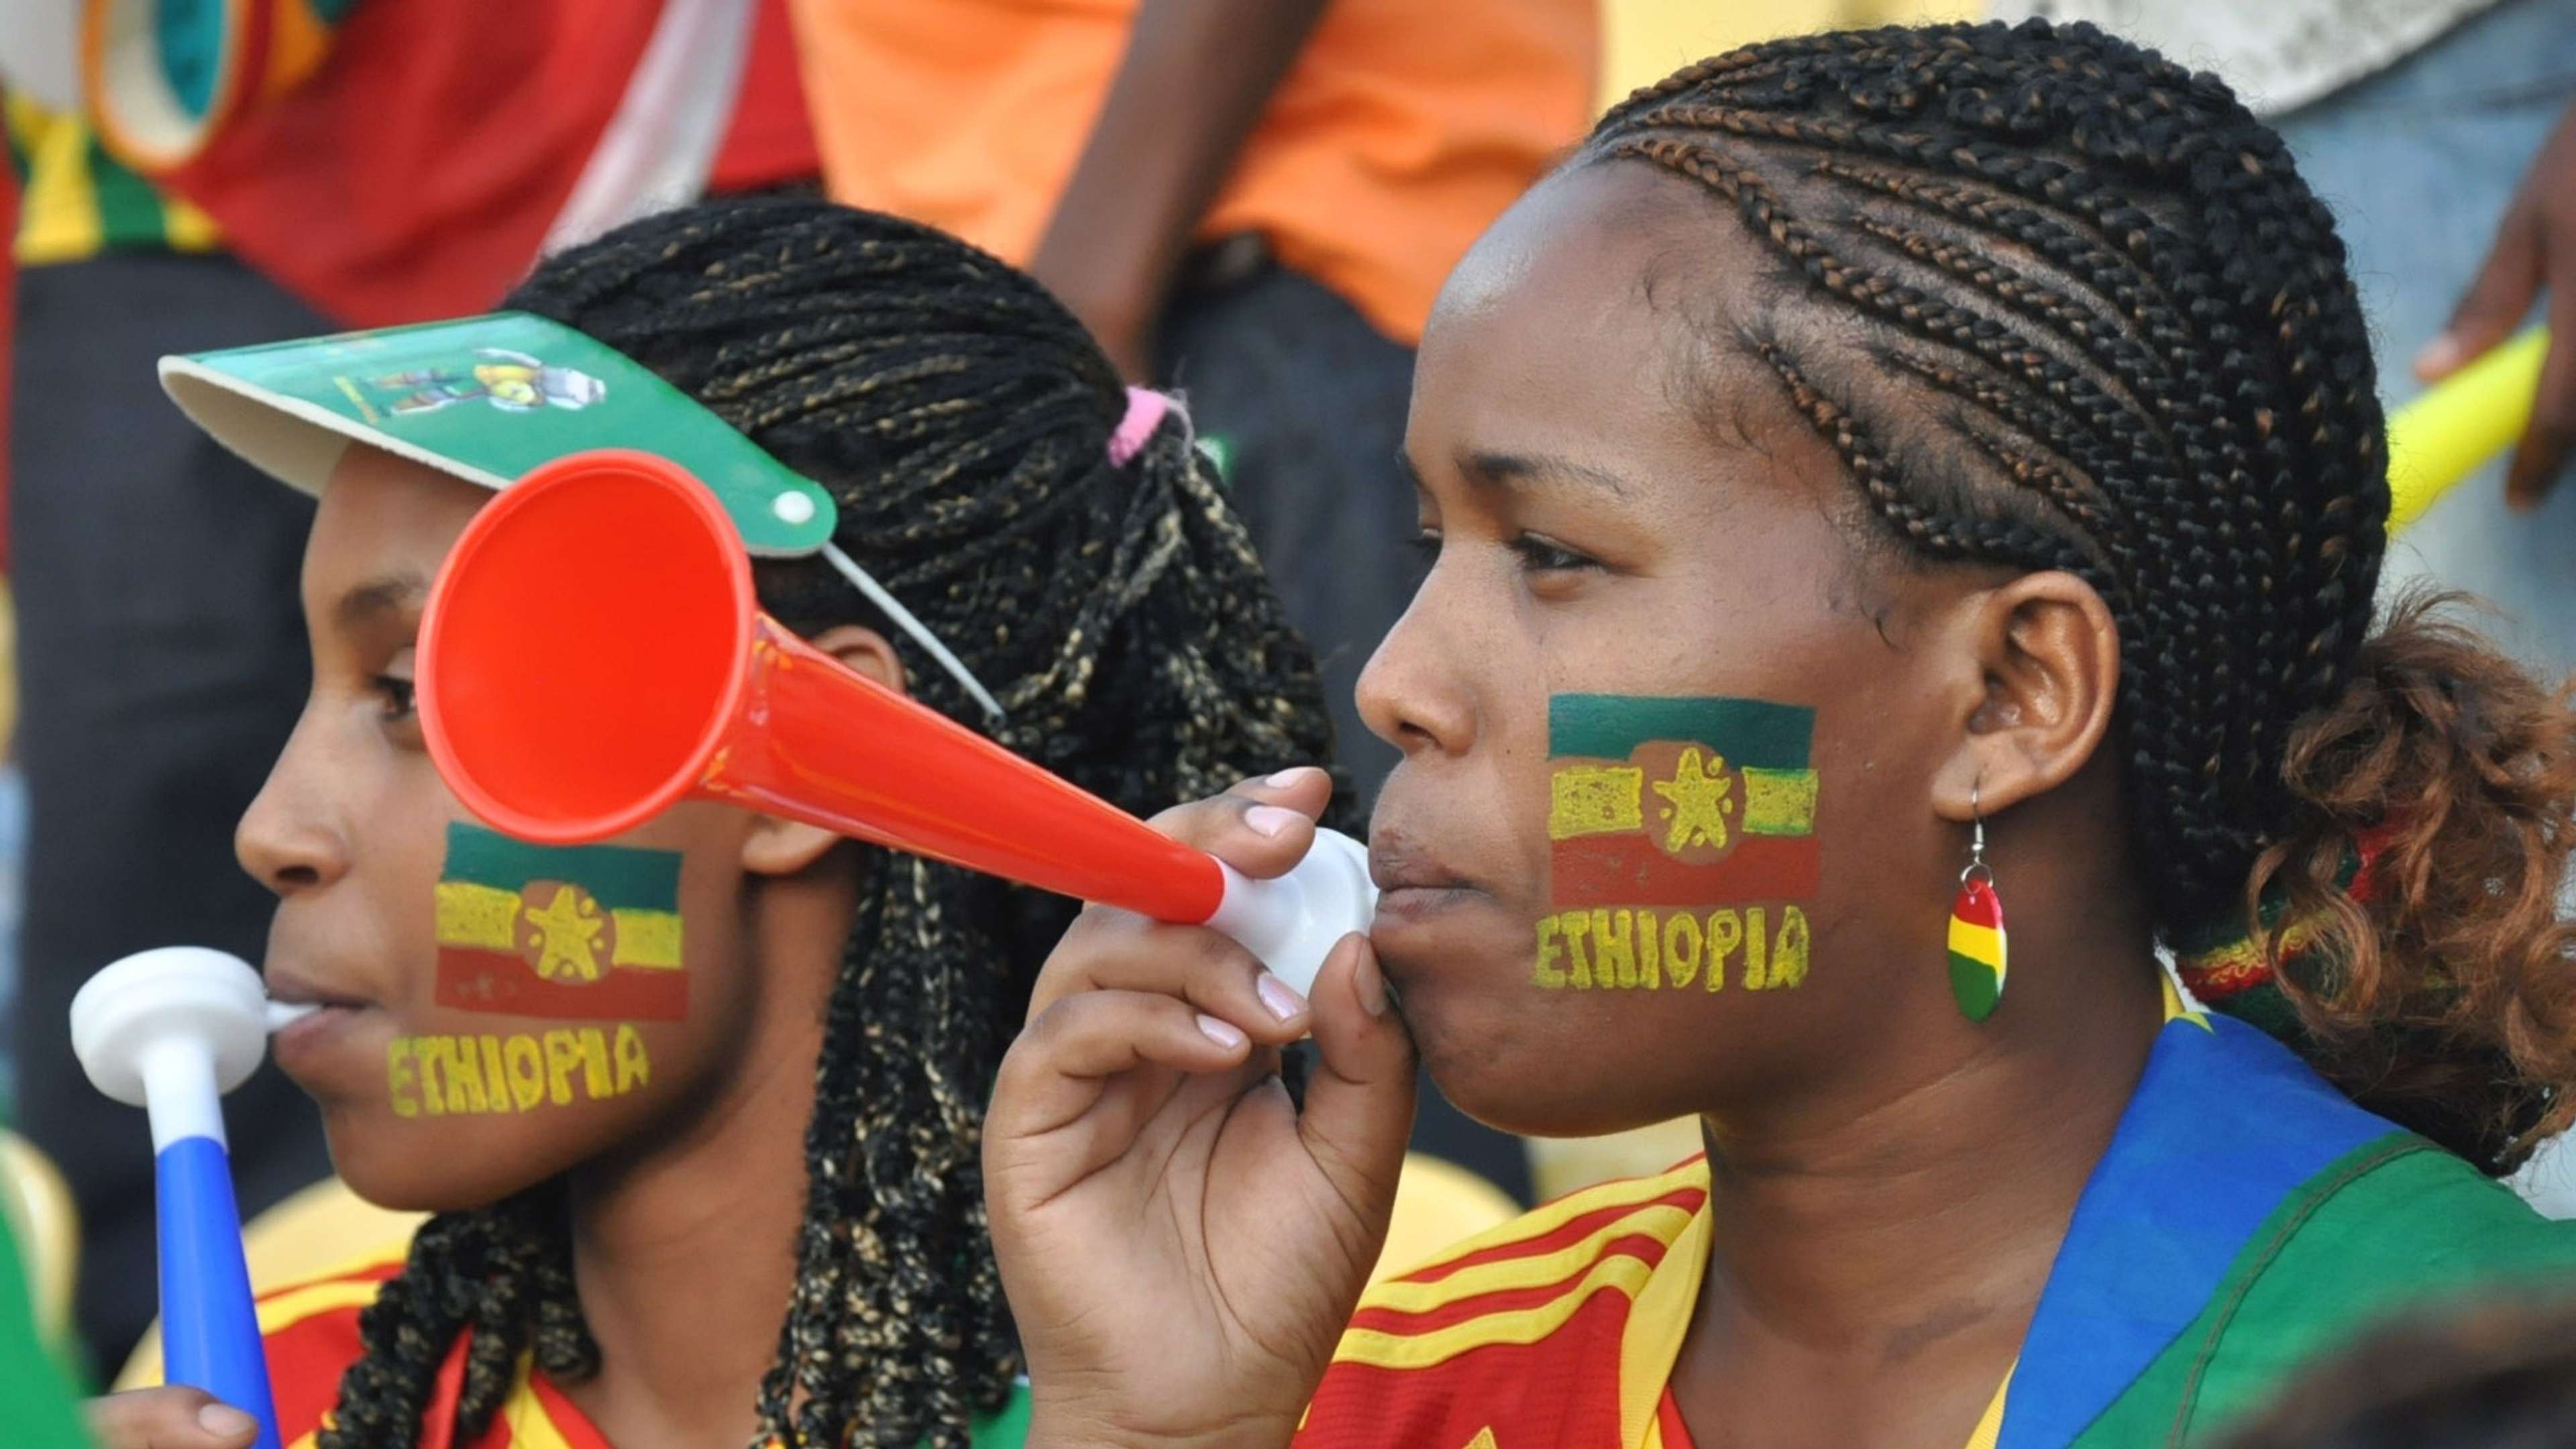 Ethiopia Fans